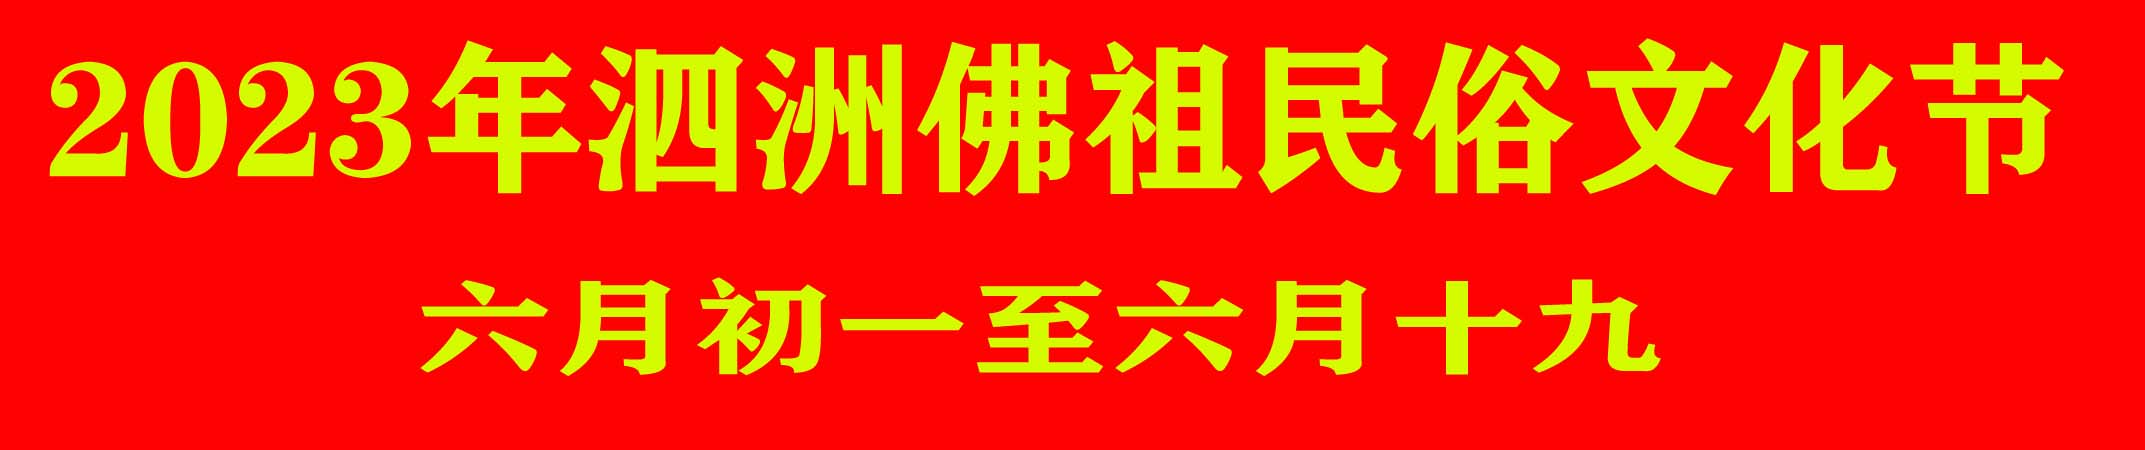 2023年泗洲佛祖民俗文化节(图1)